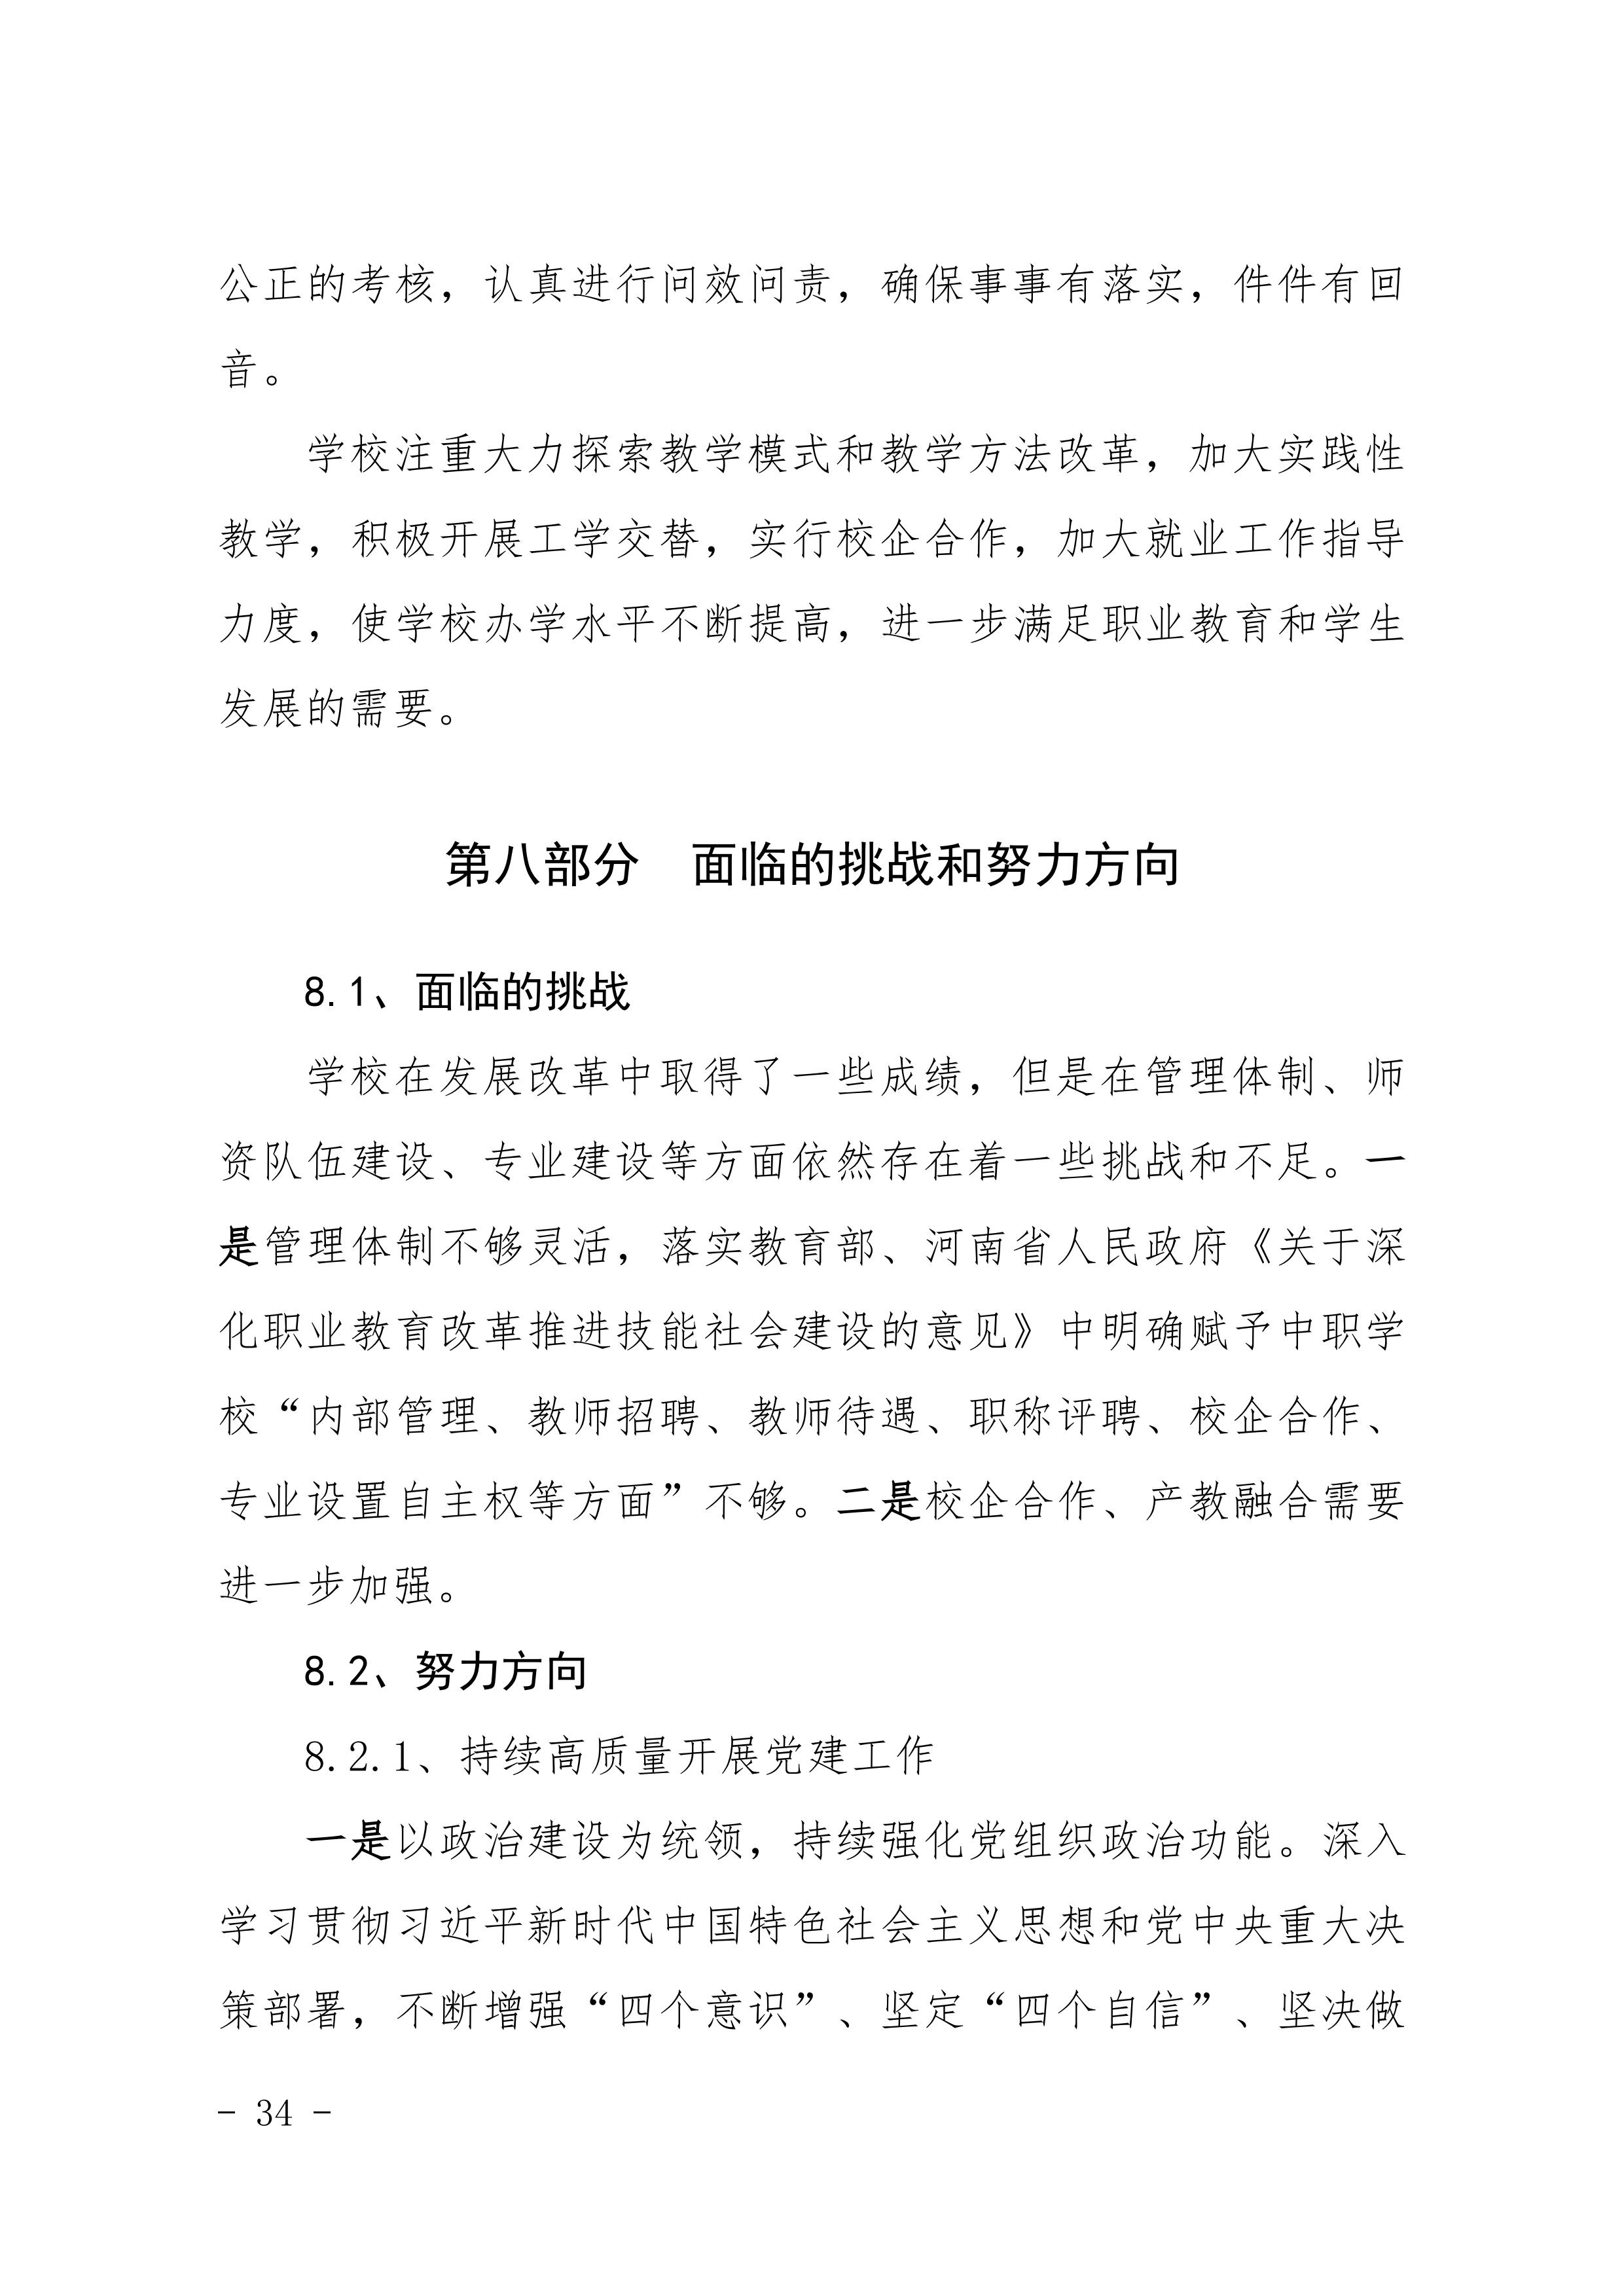 河南省民政学校职业教育质量报告（2023年度）发布版_37.jpg